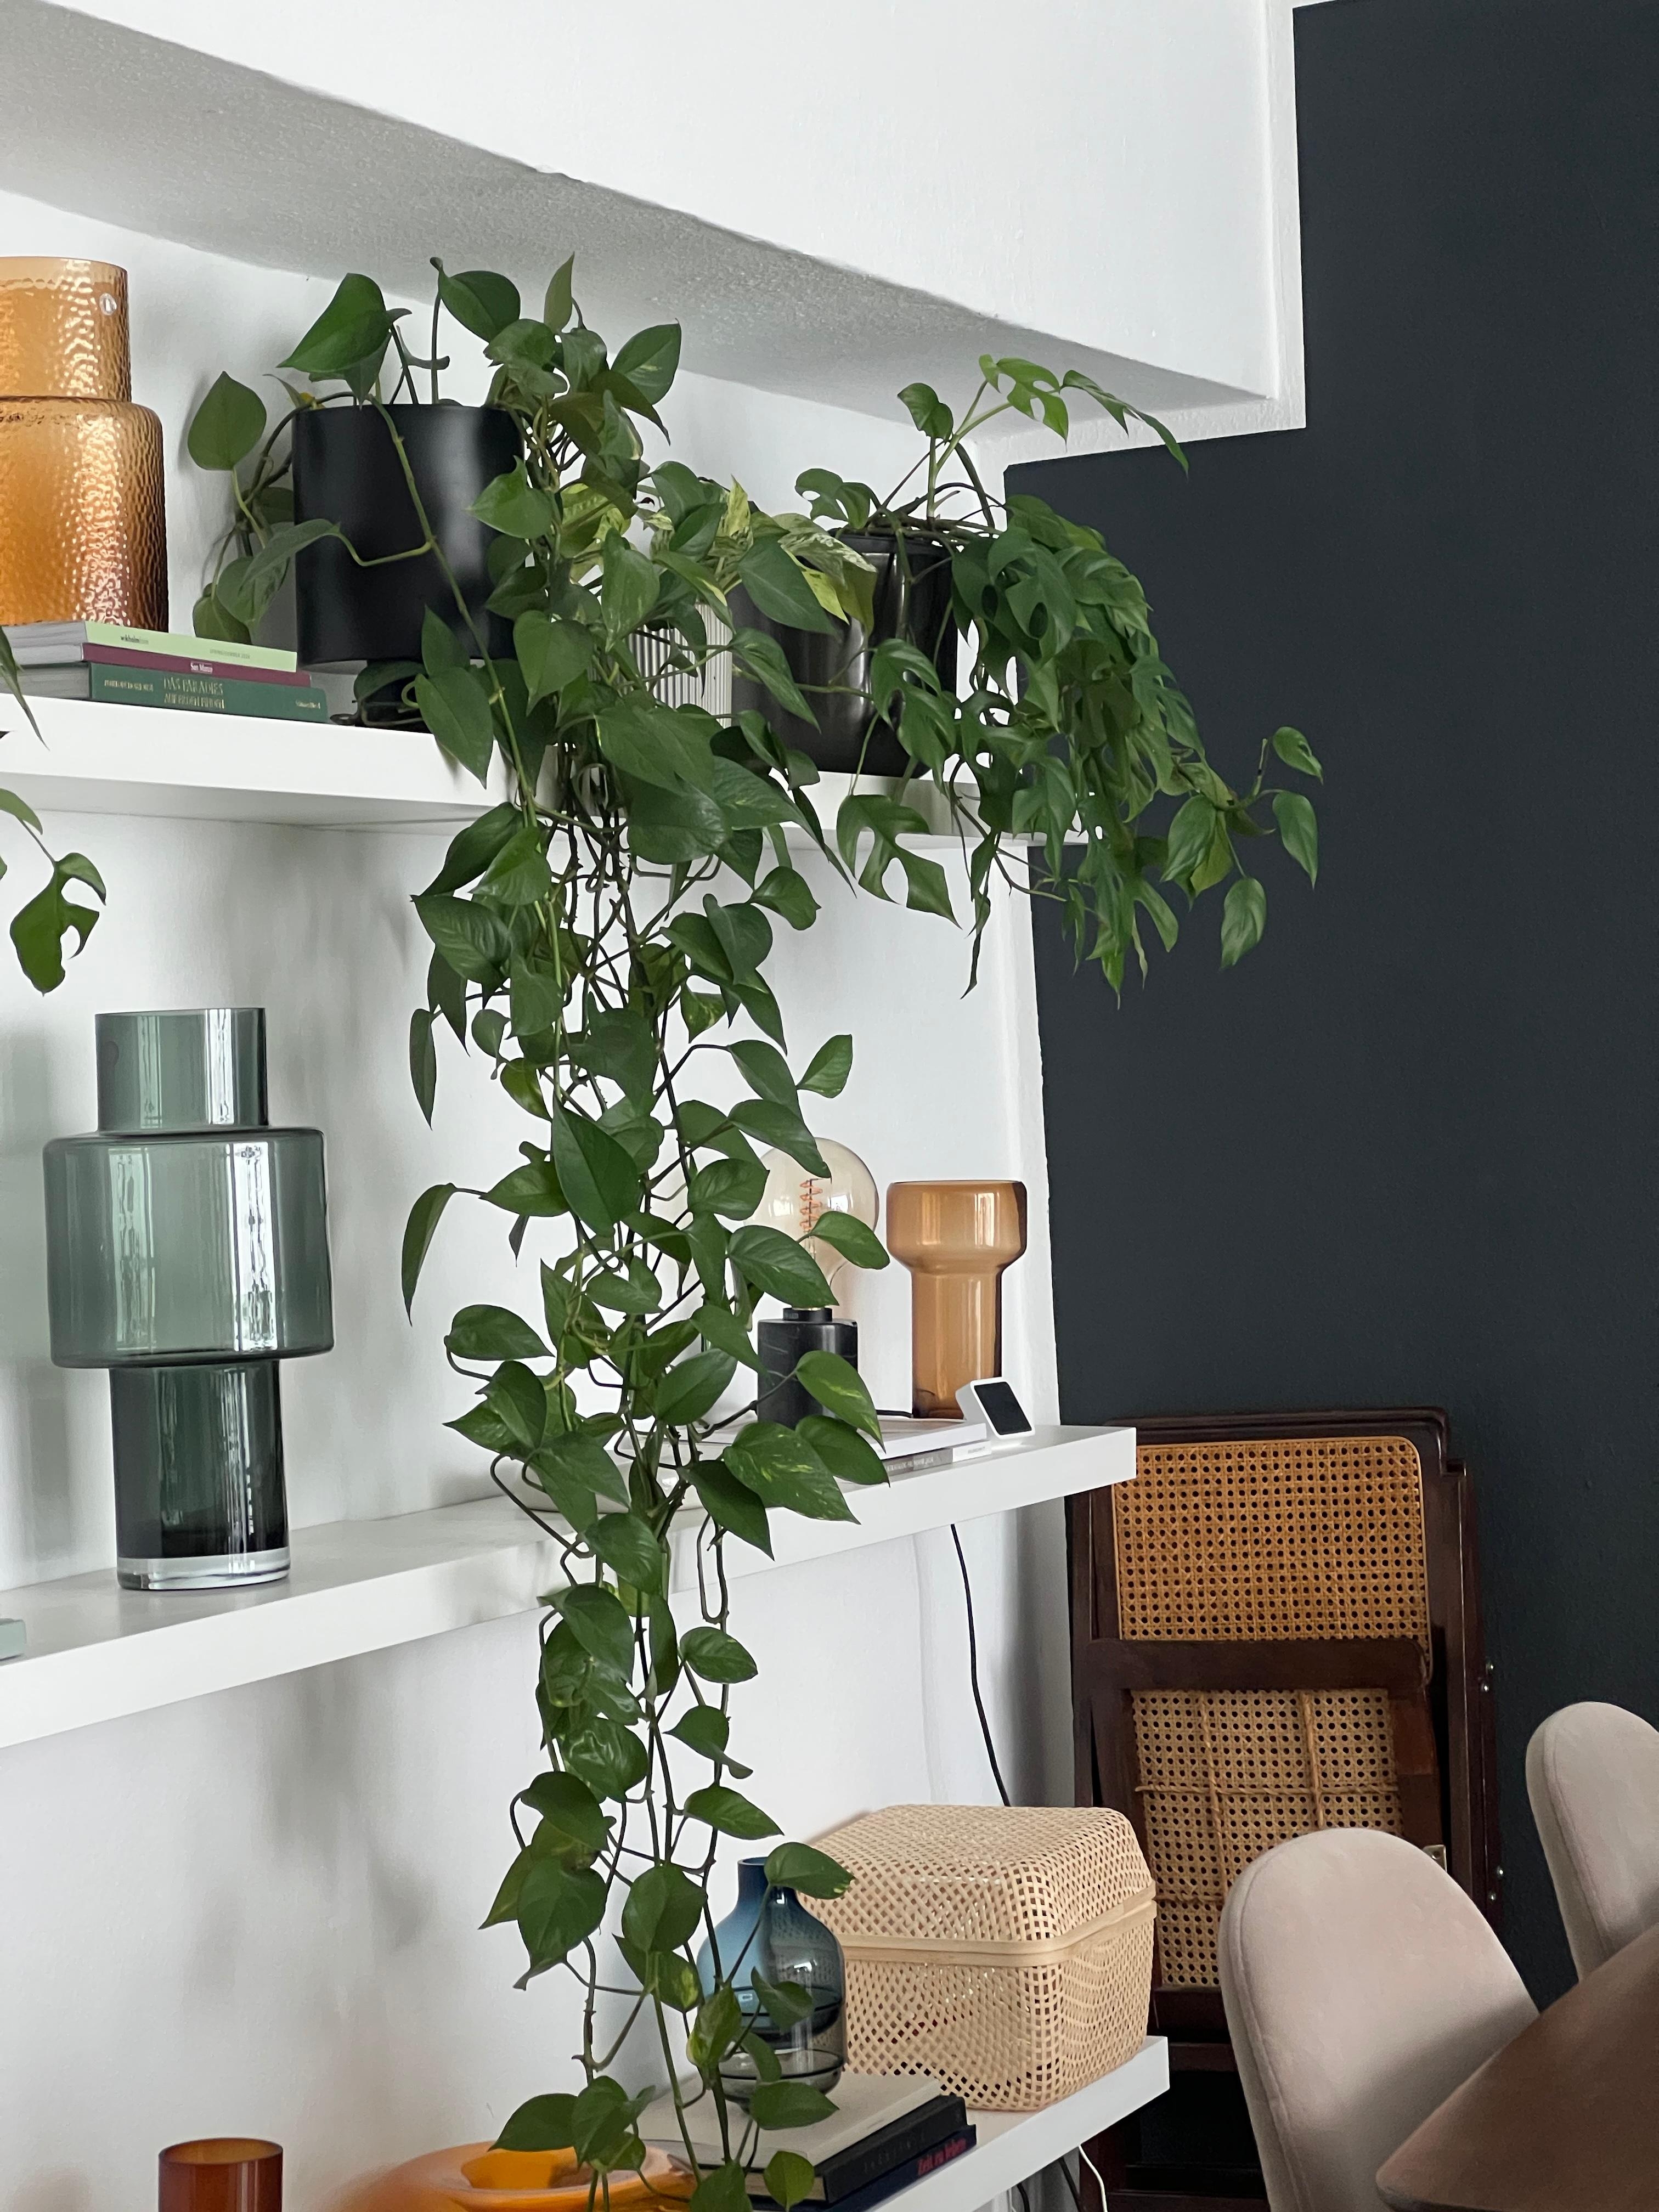 Liebe meine lack Regale von Ikea im Wohnzimmer 🫶🏼 #wohnzimmer #lack #ikea #pflanzen #vasen 